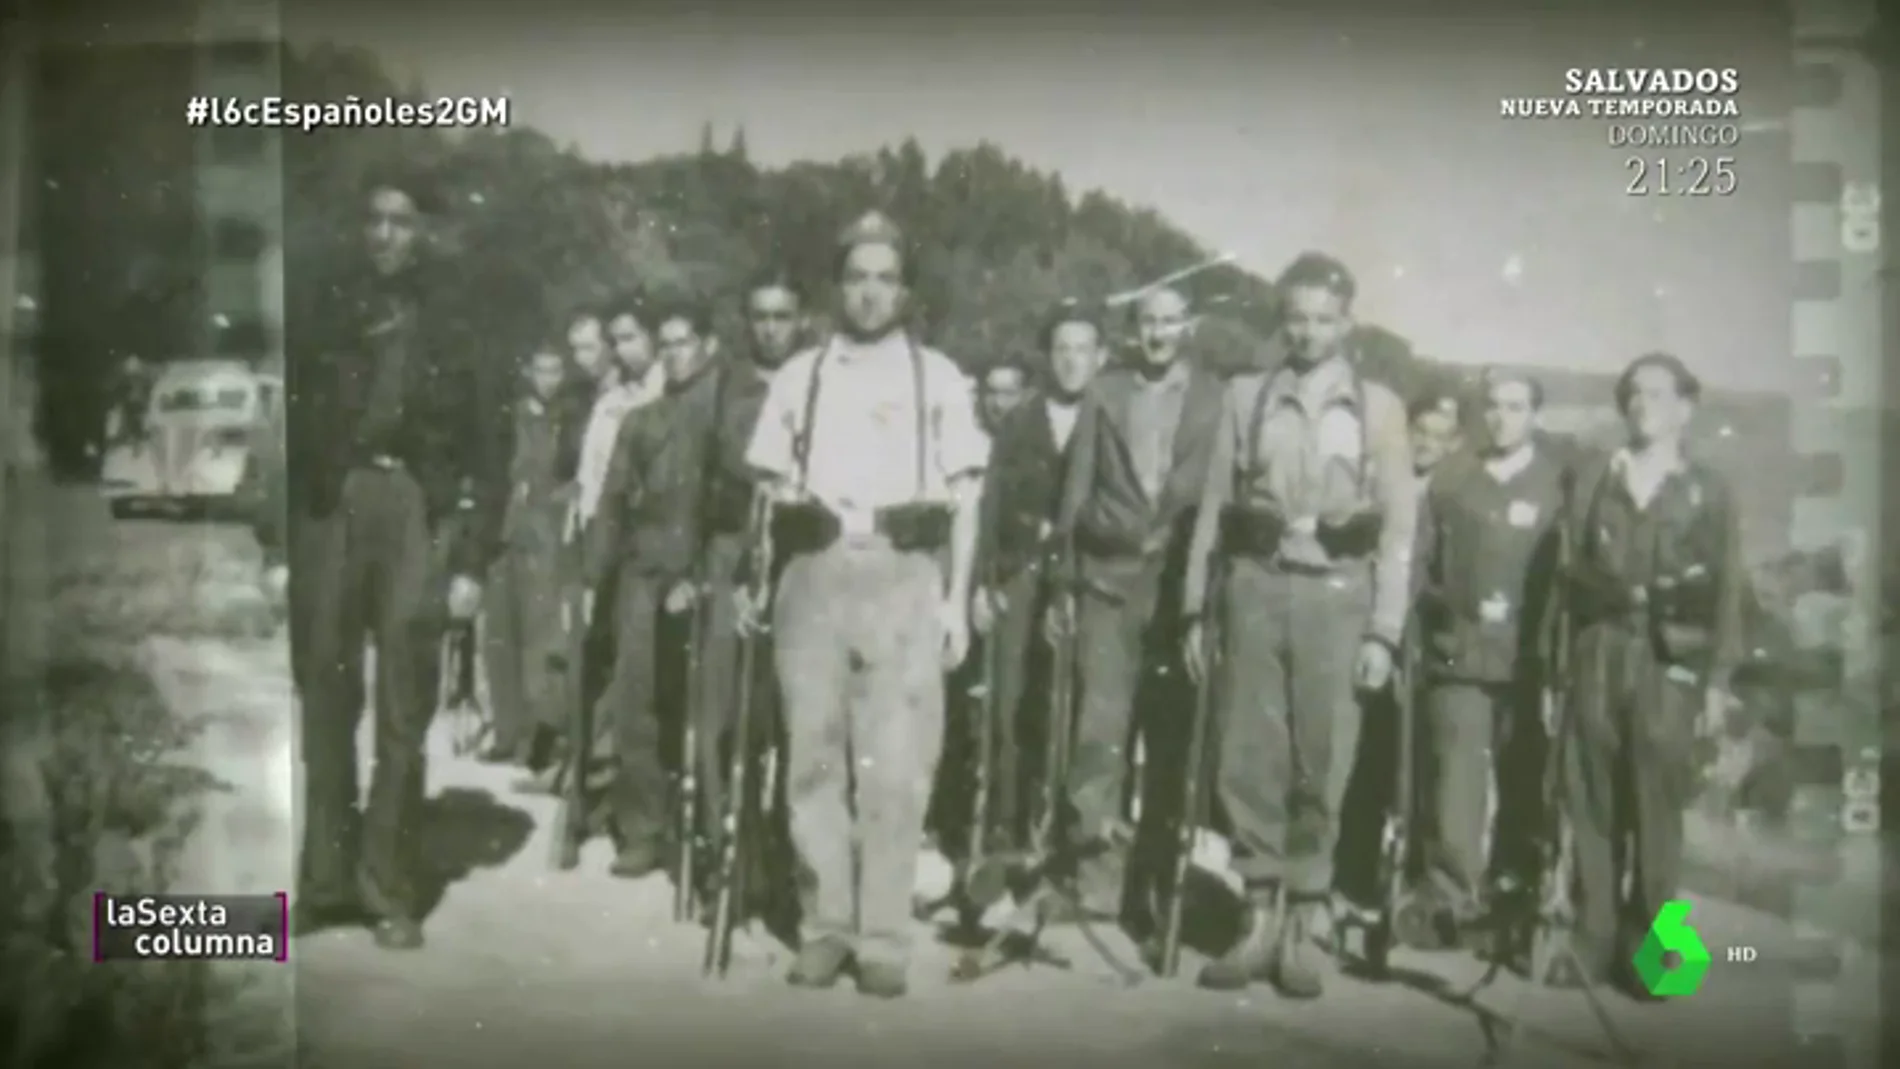 Los últimos guerrilleros que intentaron acabar con Franco: "Los aliados no nos ayudaron nunca, nos dejaron solos"